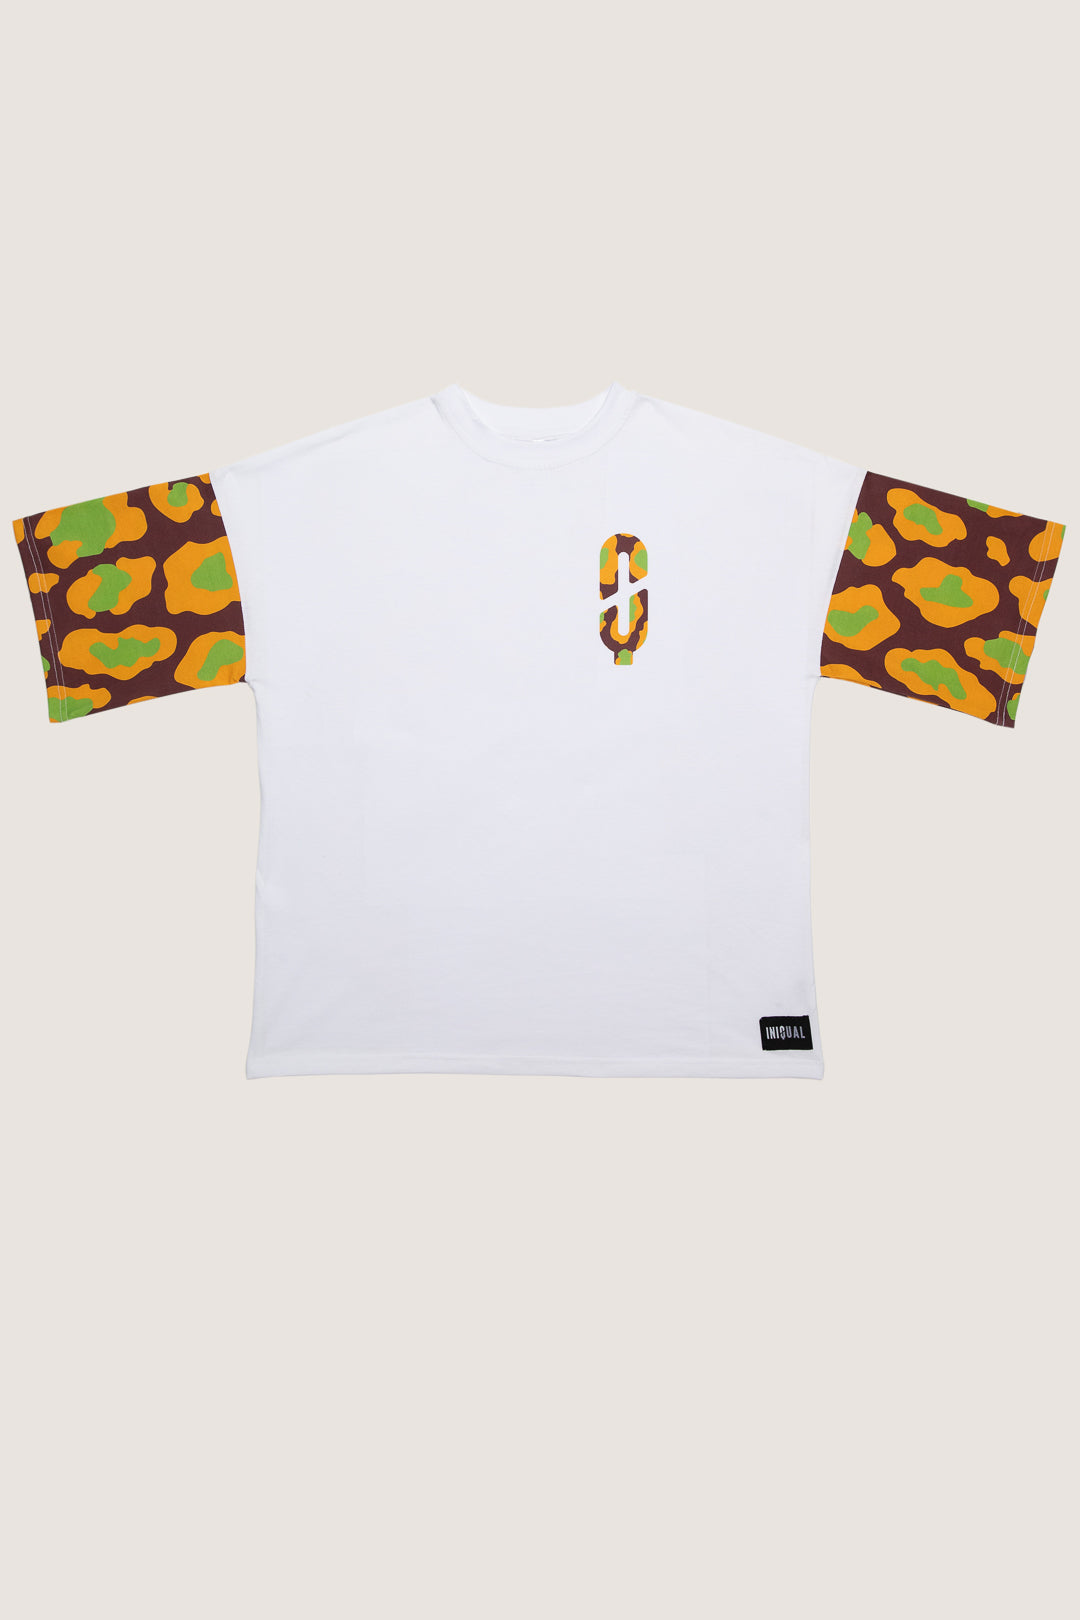 Presentación de la parte delantera de la camiseta de la cápsula safari